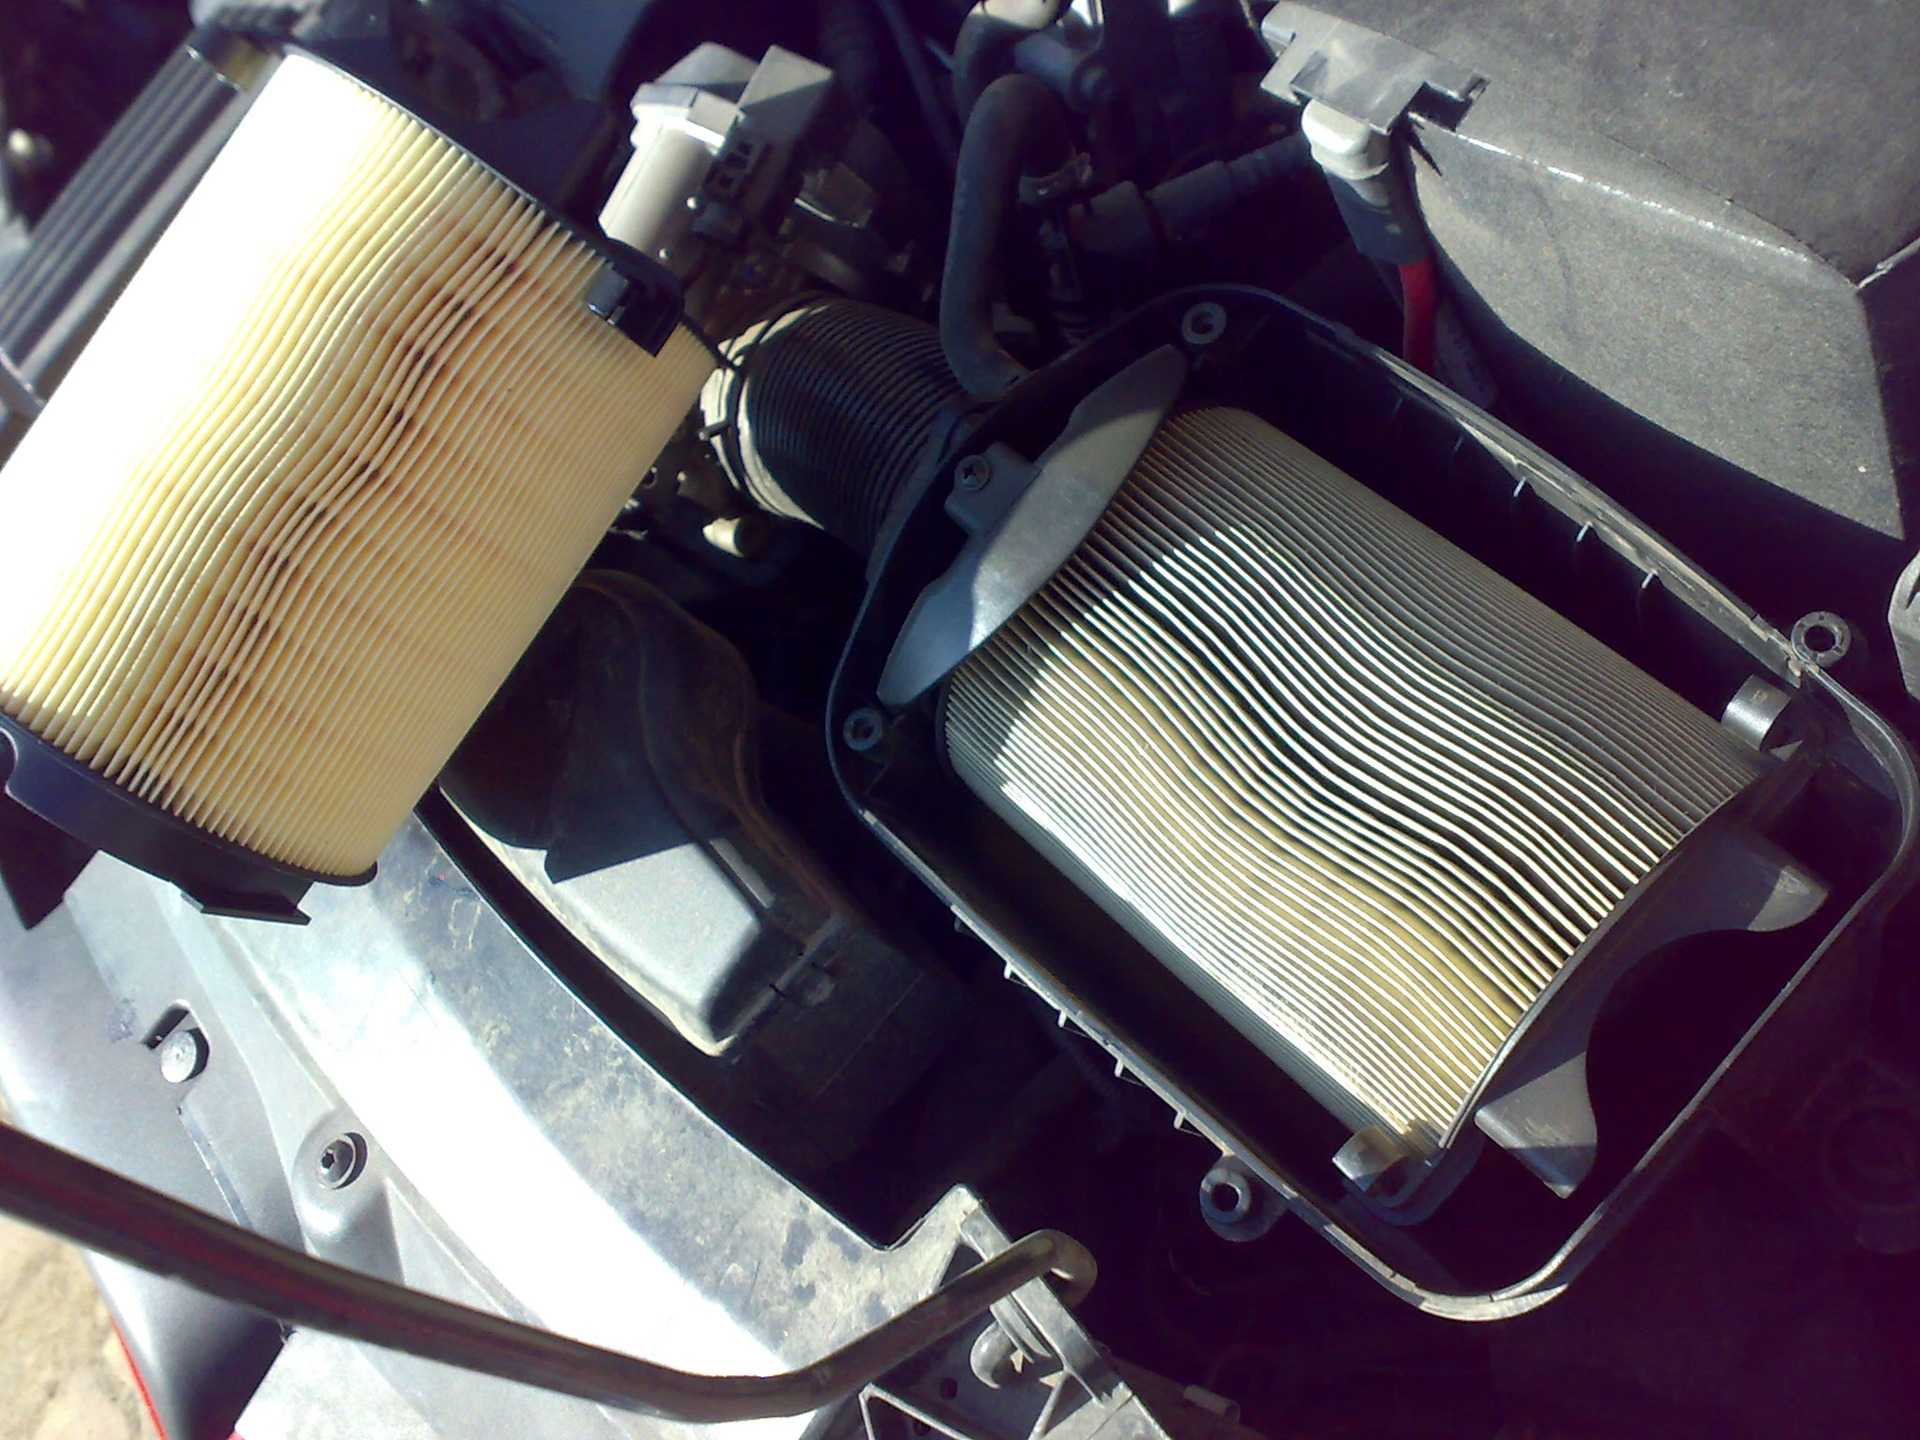 Воздушный фильтр двигателя в масле. Фотон Саванна воздушный фильтр. Воздушный фильтр m274. Воздушный фильтр двигателя XP 680.